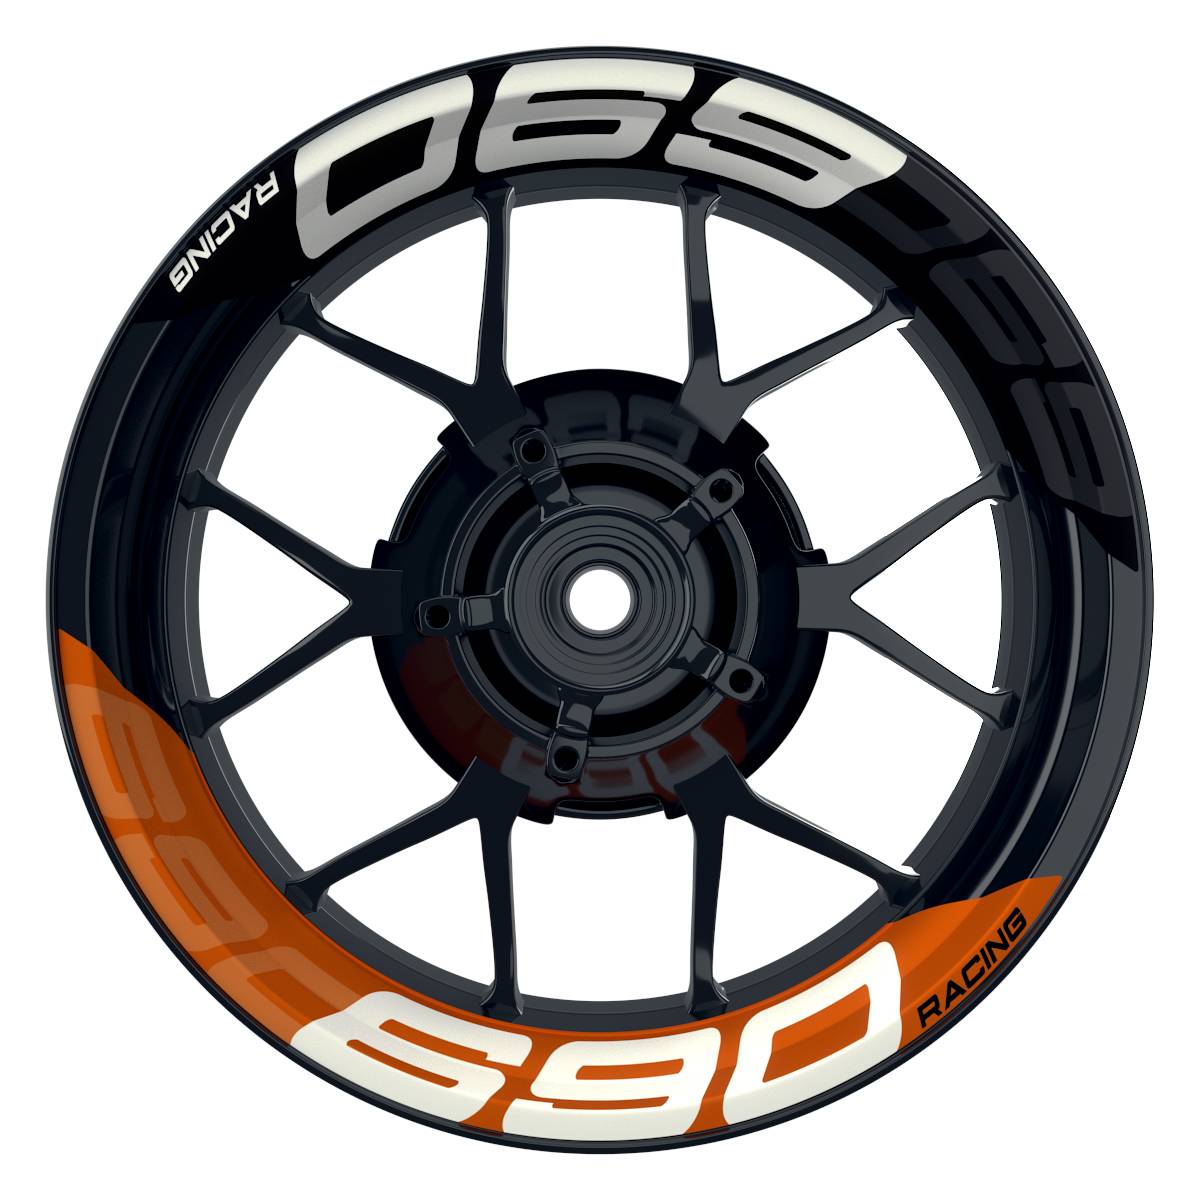 Wheelsticker Felgenaufkleber KTM Racing 690 halb halb V2 schwarz orange Frontansicht